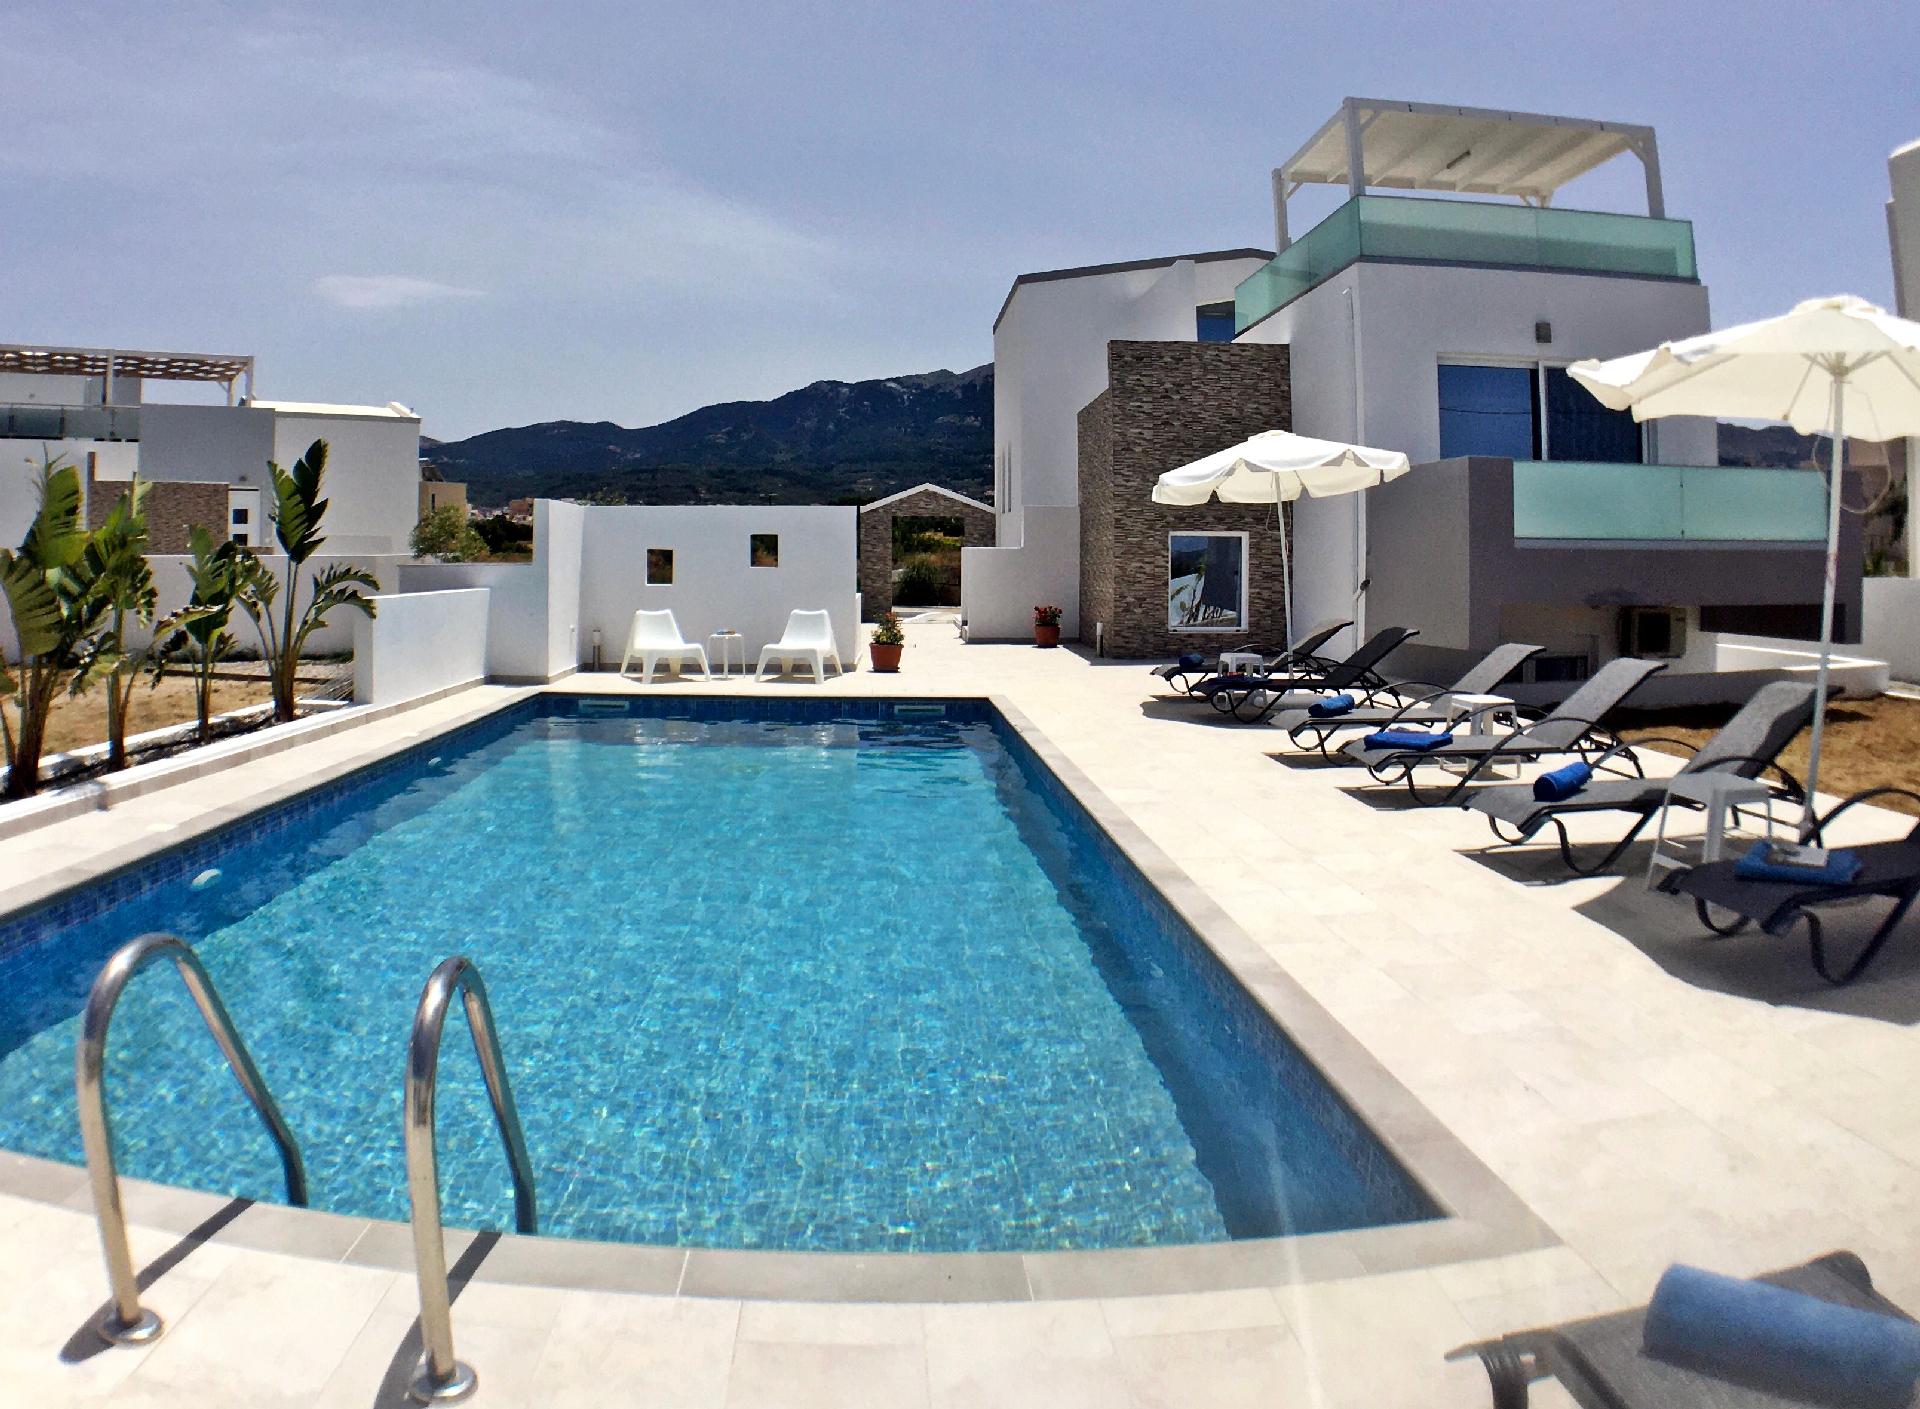 Ferienhaus mit Privatpool für 11 Personen ca. Ferienhaus in Griechenland